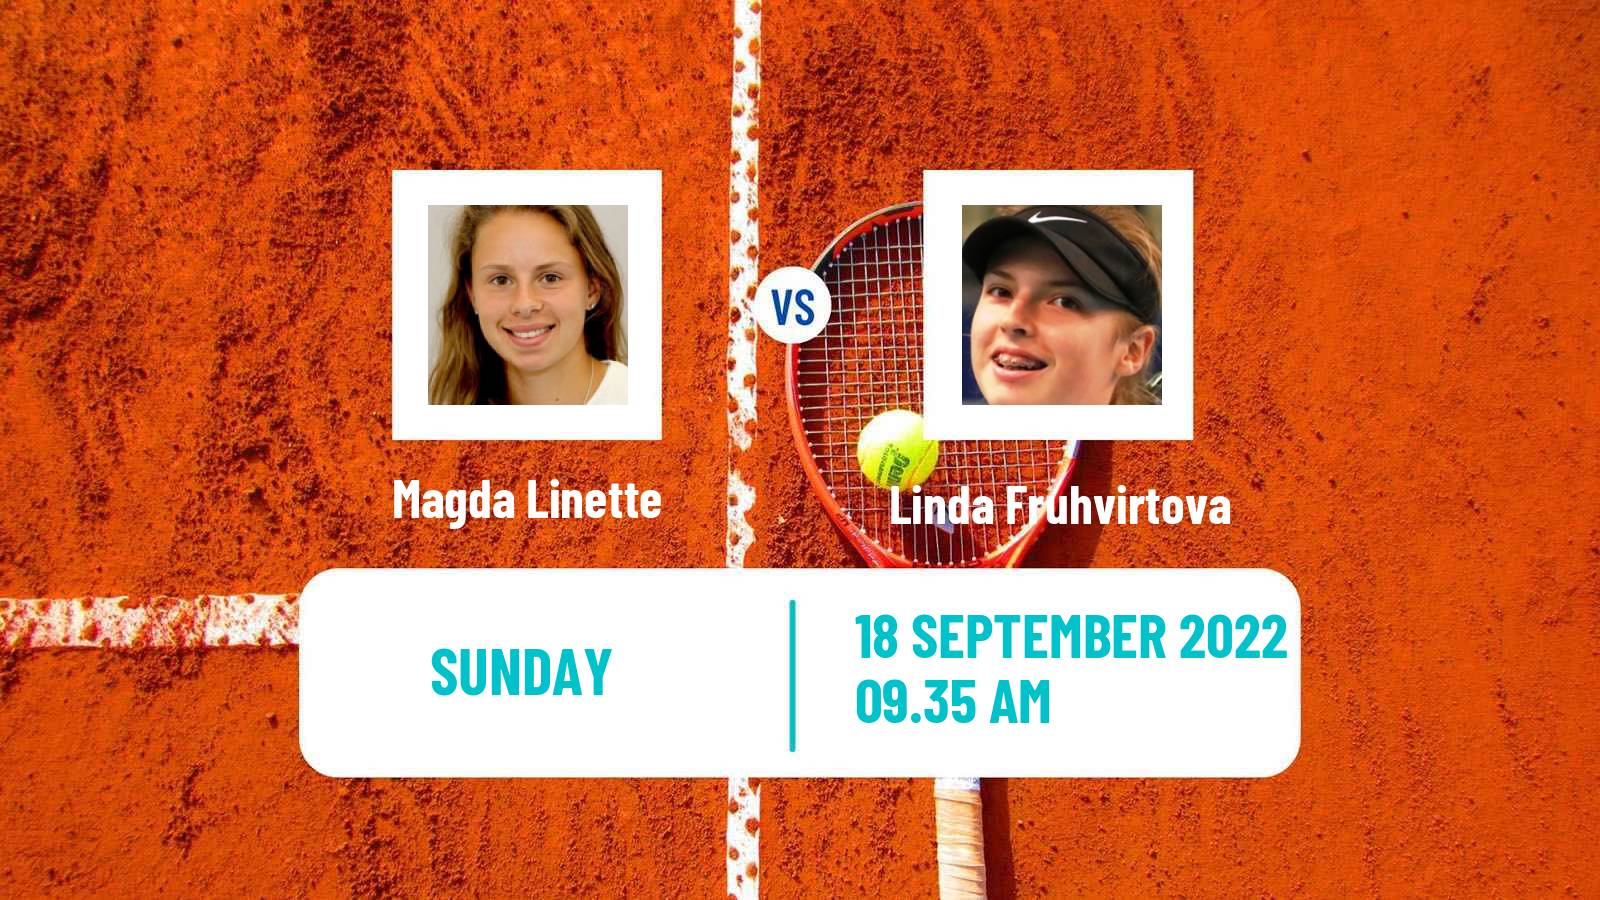 Tennis WTA Chennai Magda Linette - Linda Fruhvirtova